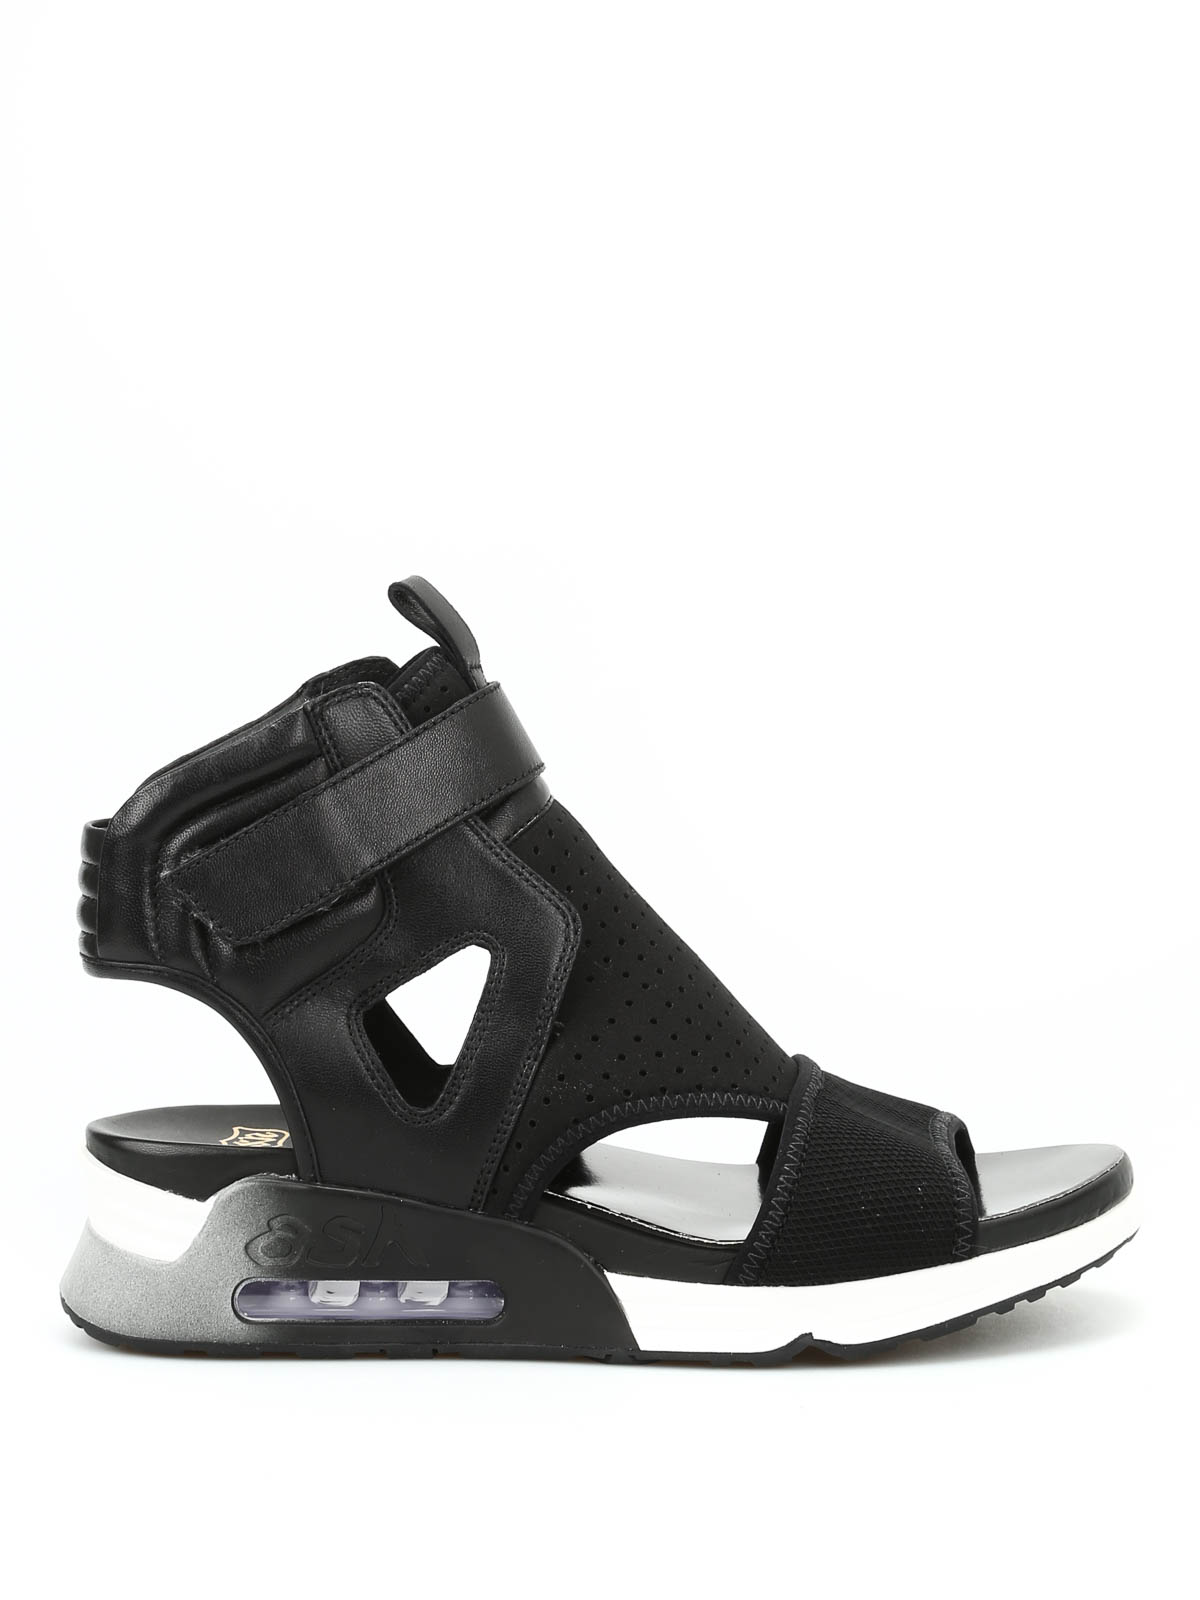 overskridelsen Forlænge Rengør rummet Sandals Ash - Legend sneaker sandals - 112698002 | Shop online at iKRIX